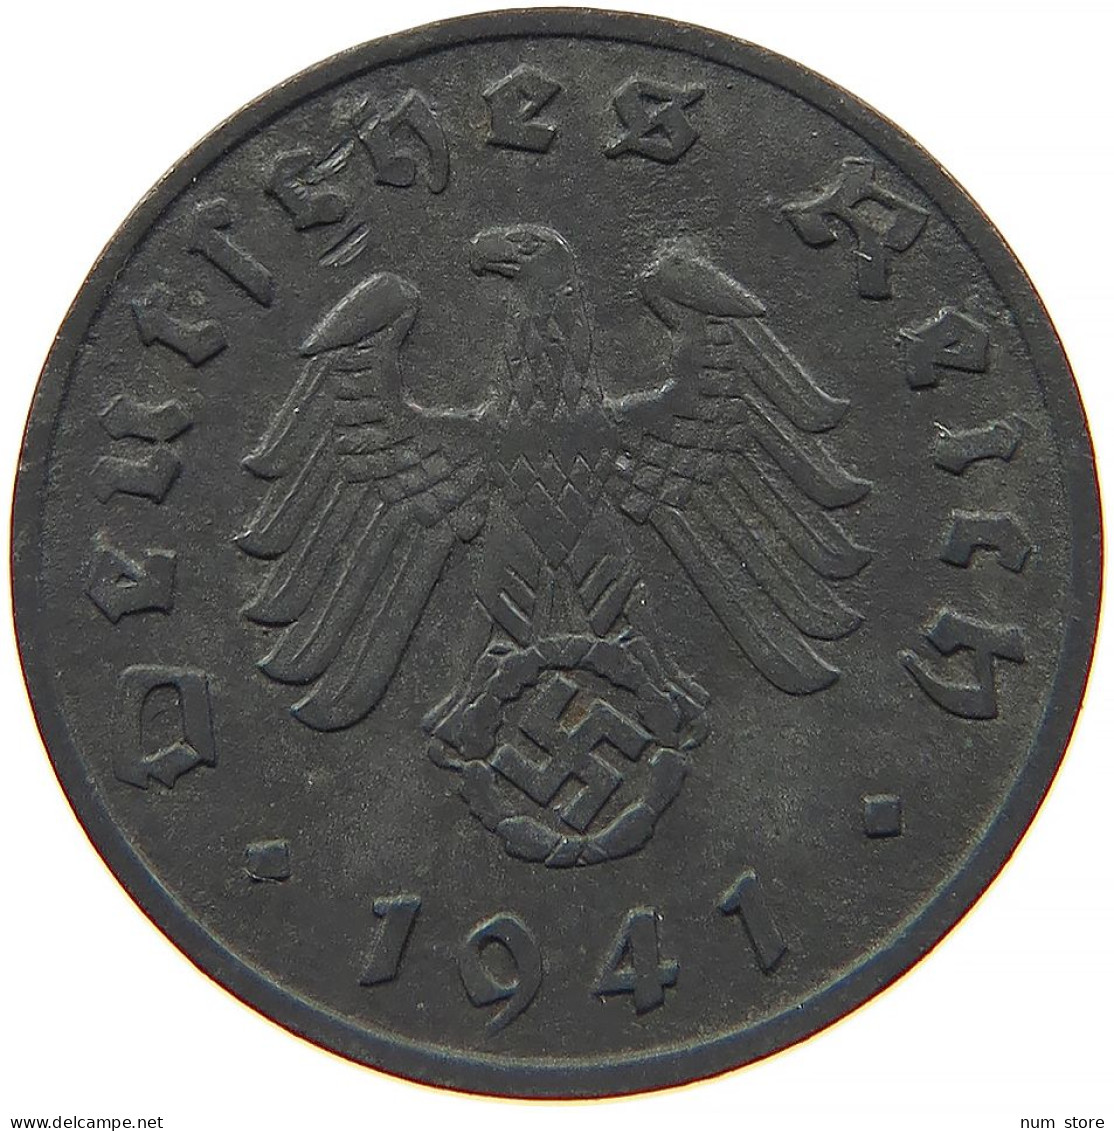 GERMANY 1 REICHSPFENNIG 1941 A #s091 1039 - 1 Reichspfennig